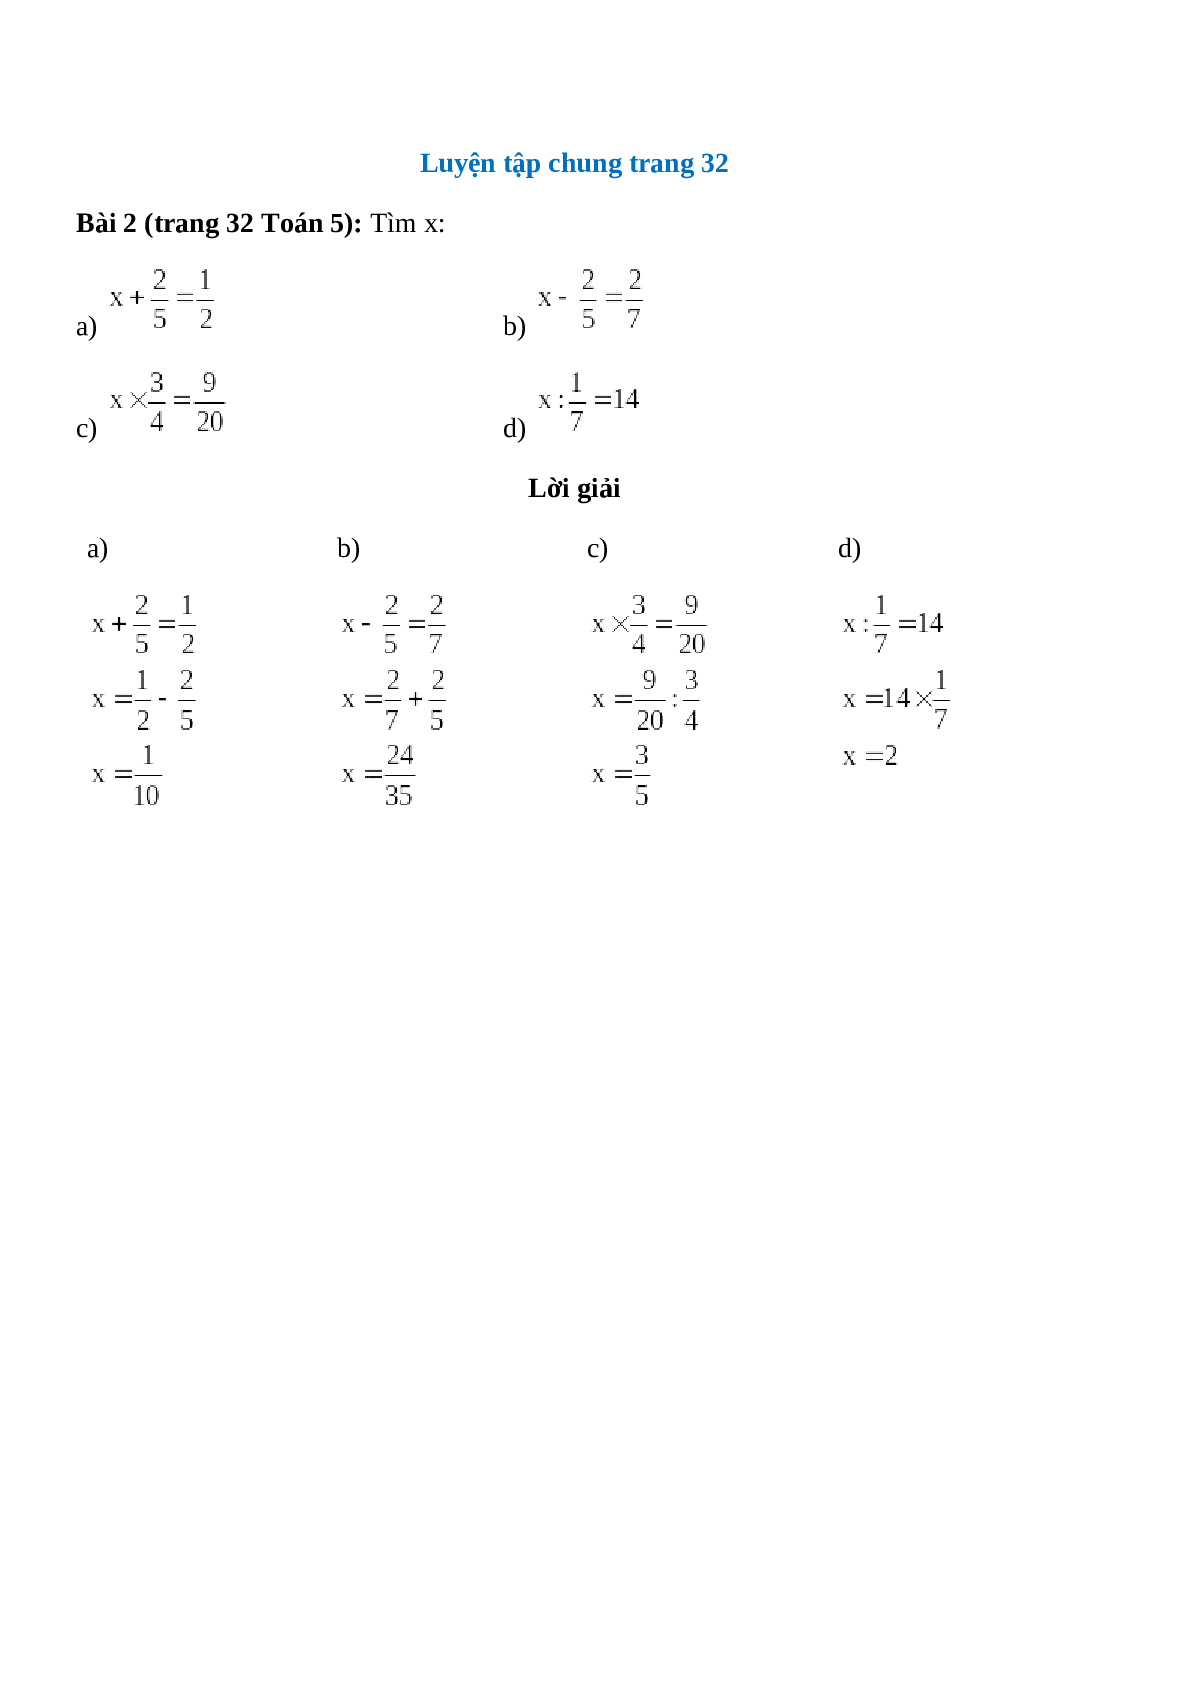 Tìm x: x + 2/5 = 1/2 (trang 1)